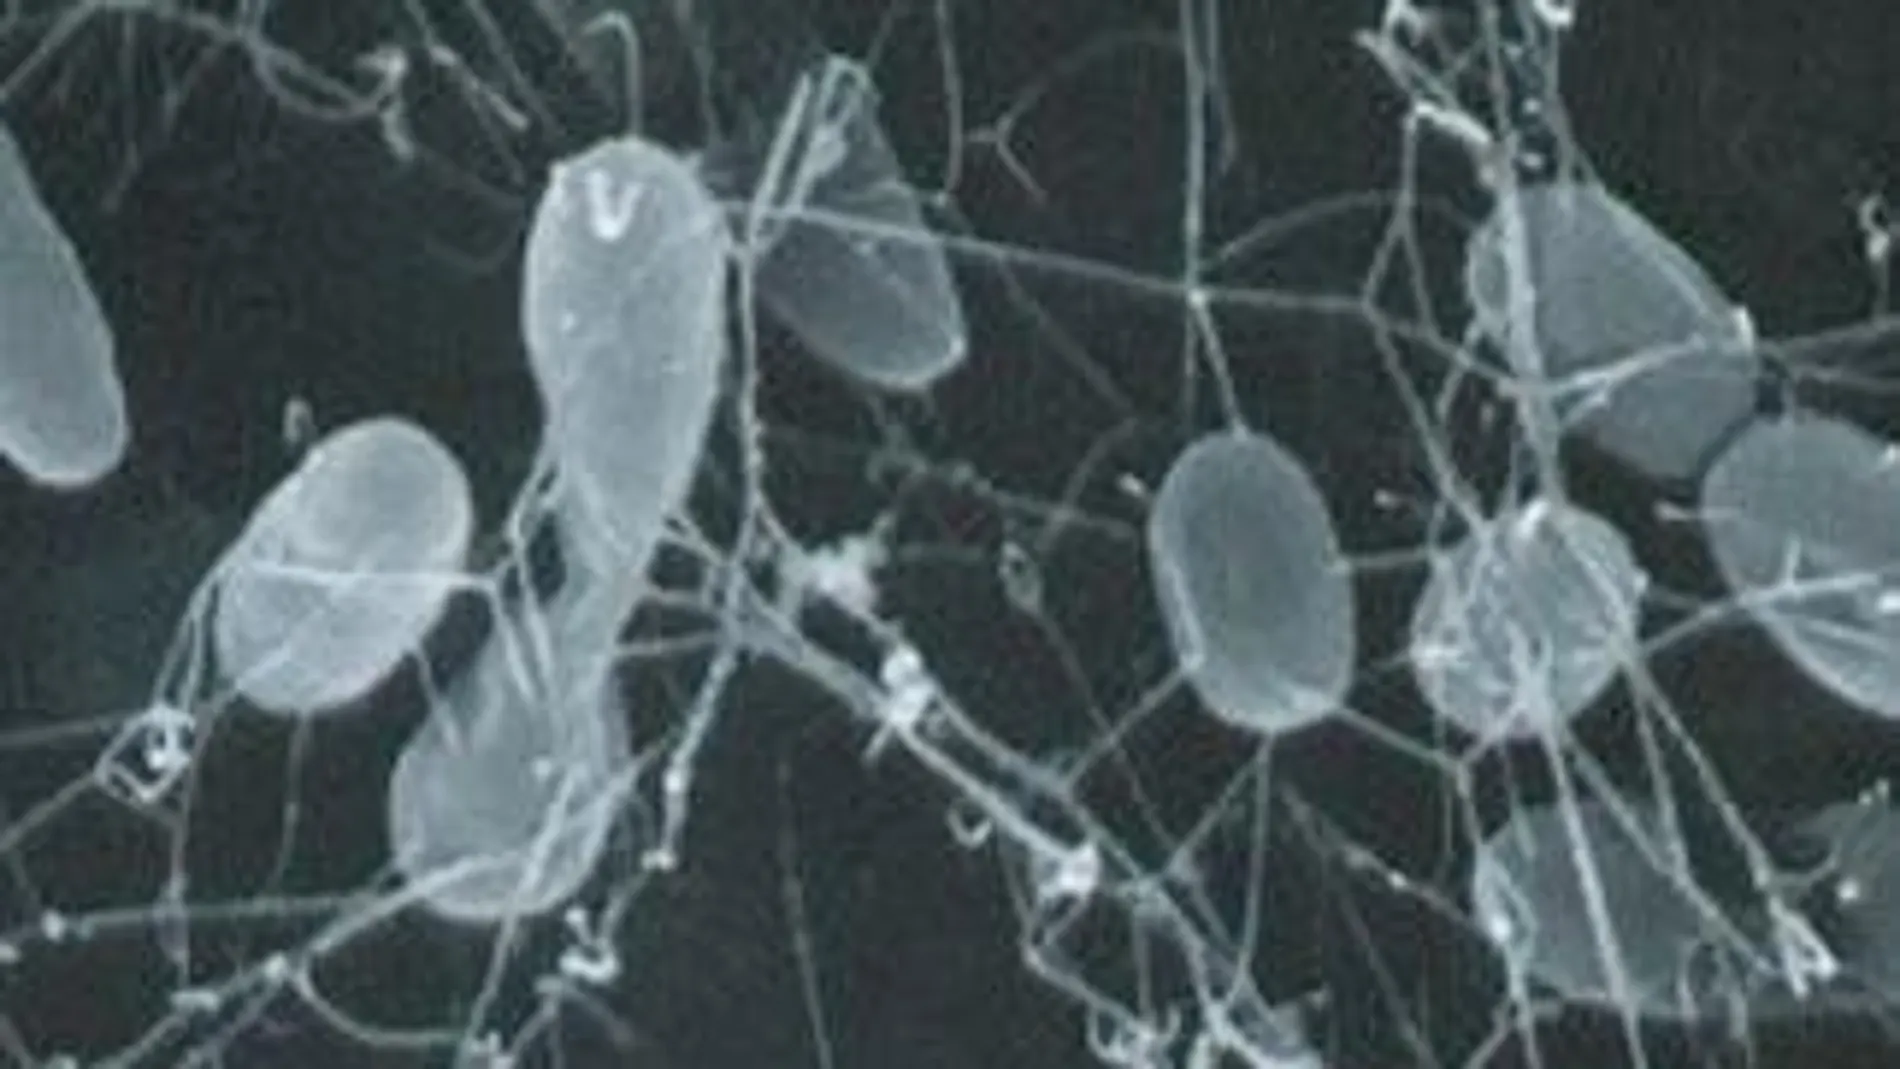 Bacterias termofilas vistas a través del microscopio.